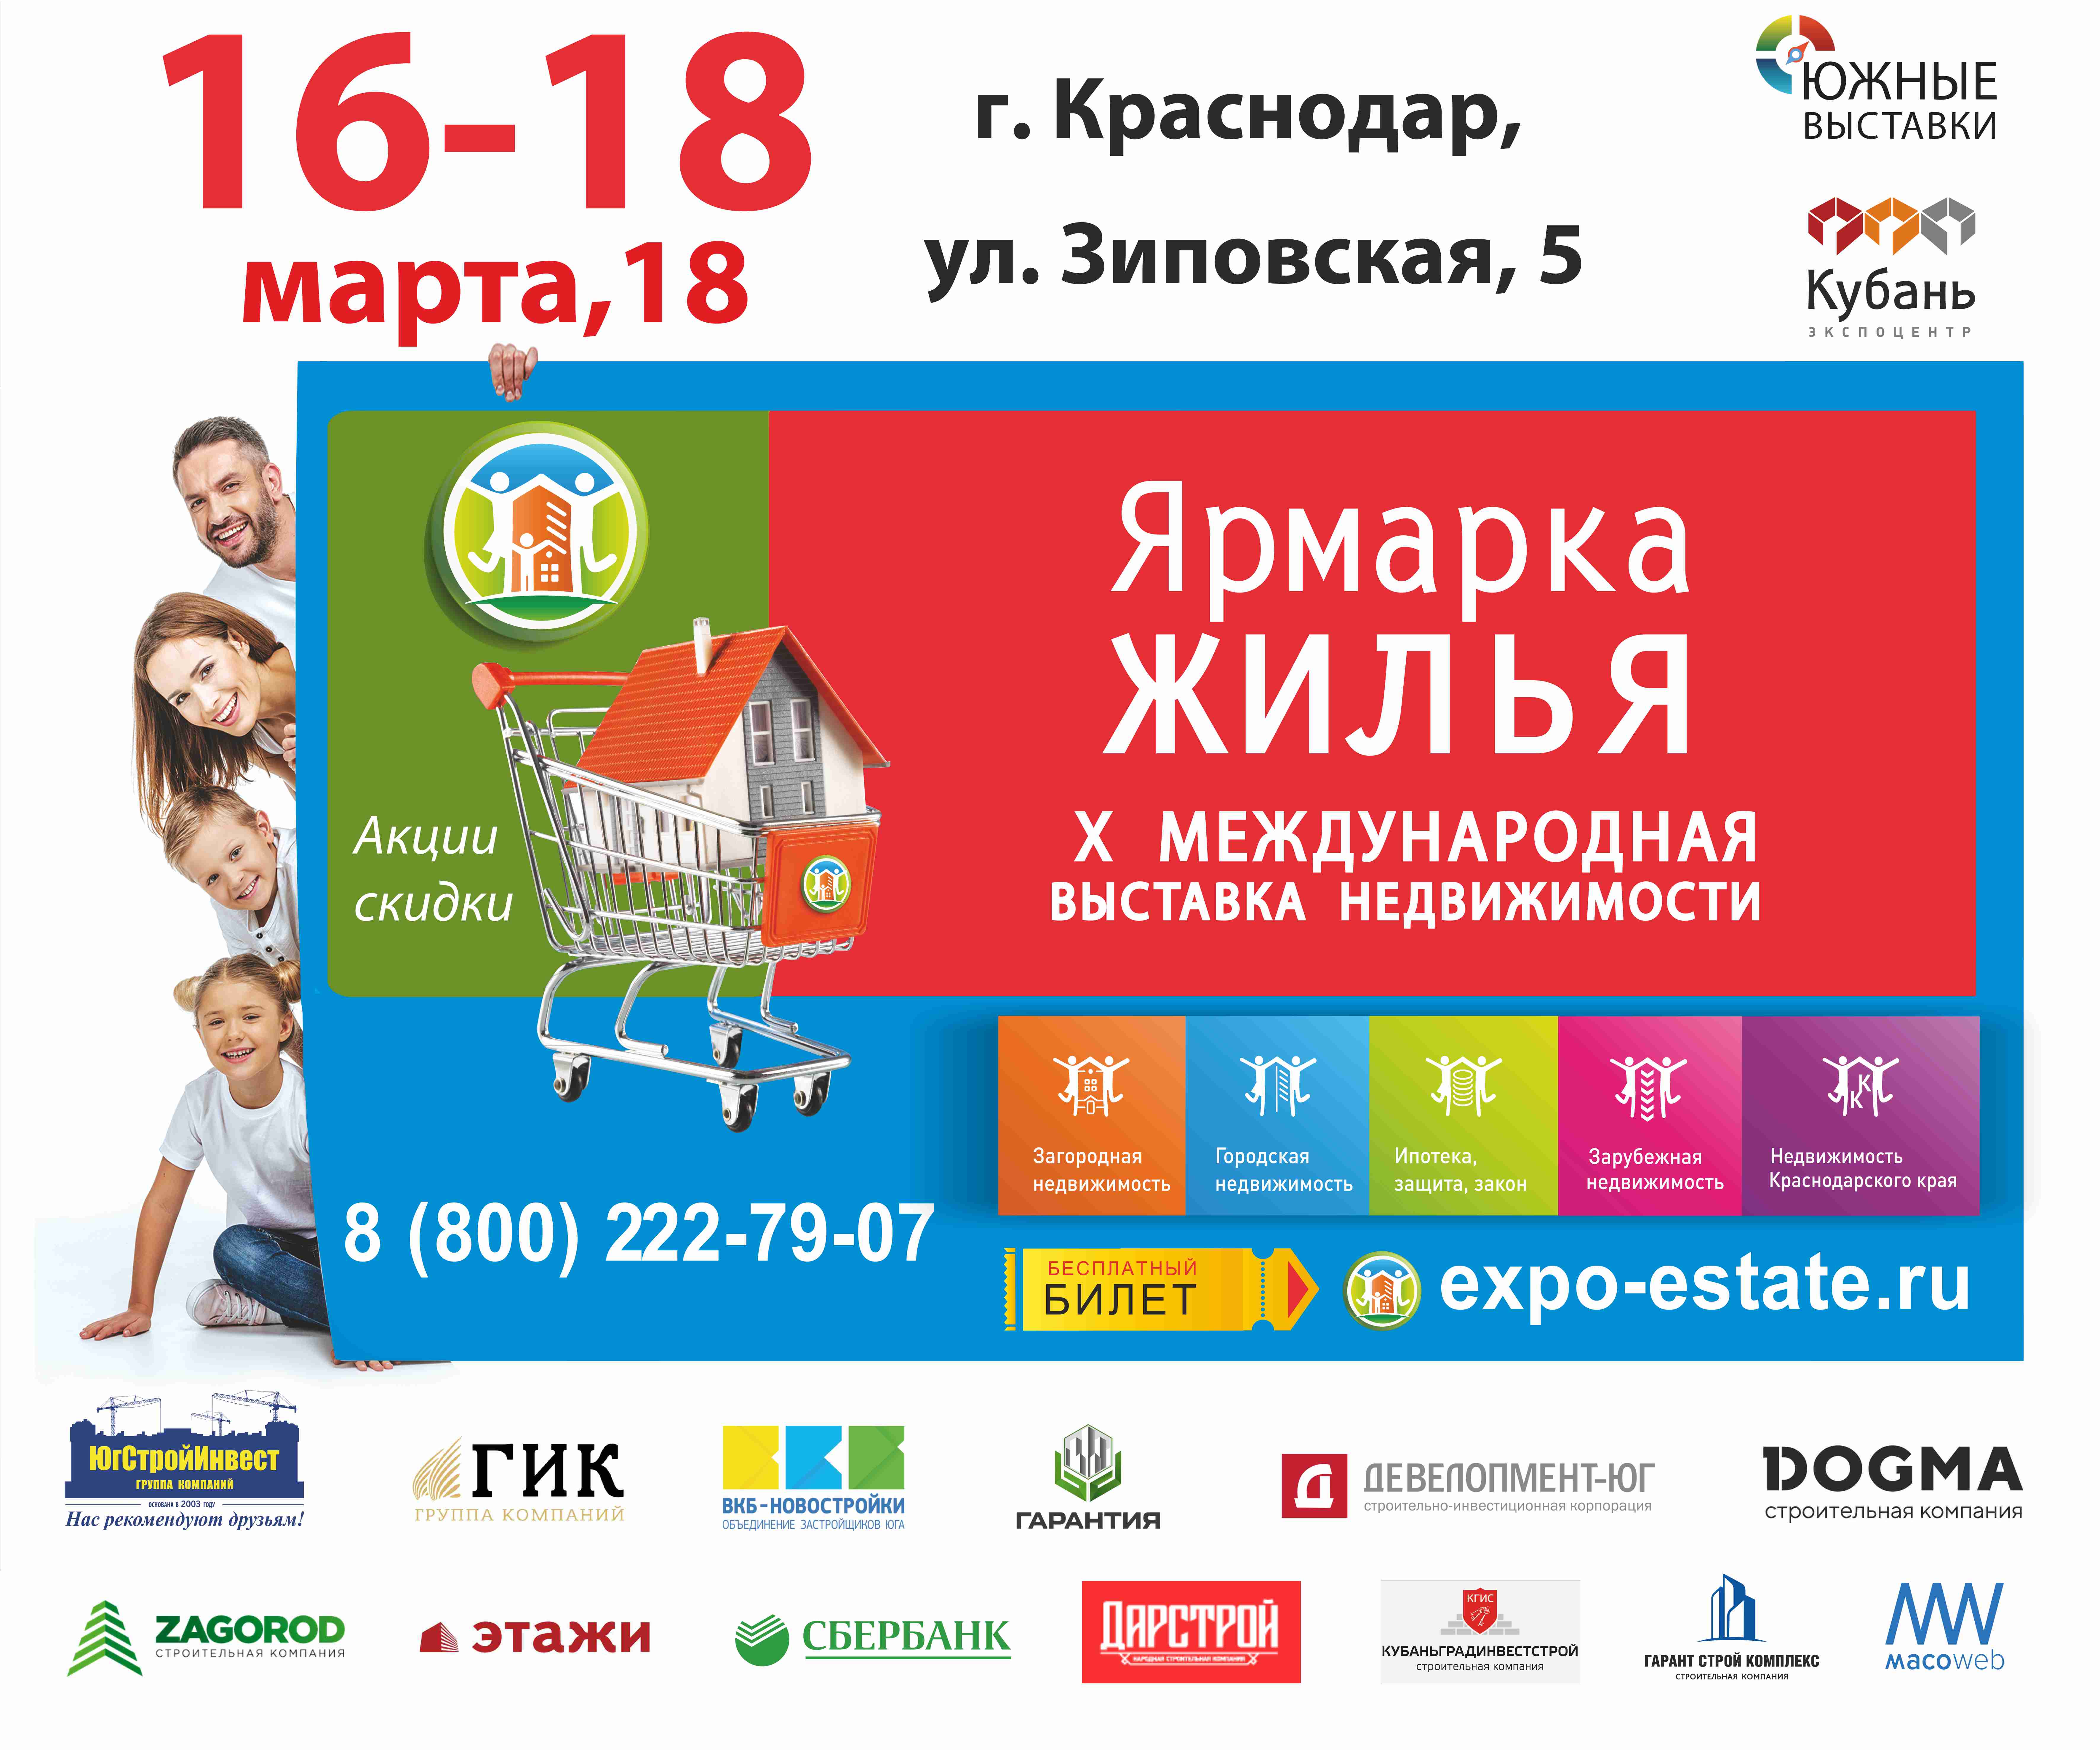 С 16 по 18 марта 2018 года в Выставочном центре «КубаньЭКСПОЦЕНТР»  на Зиповской, 5 состоится юбилейная X Международная выставка недвижимости «Ярмарка жилья».